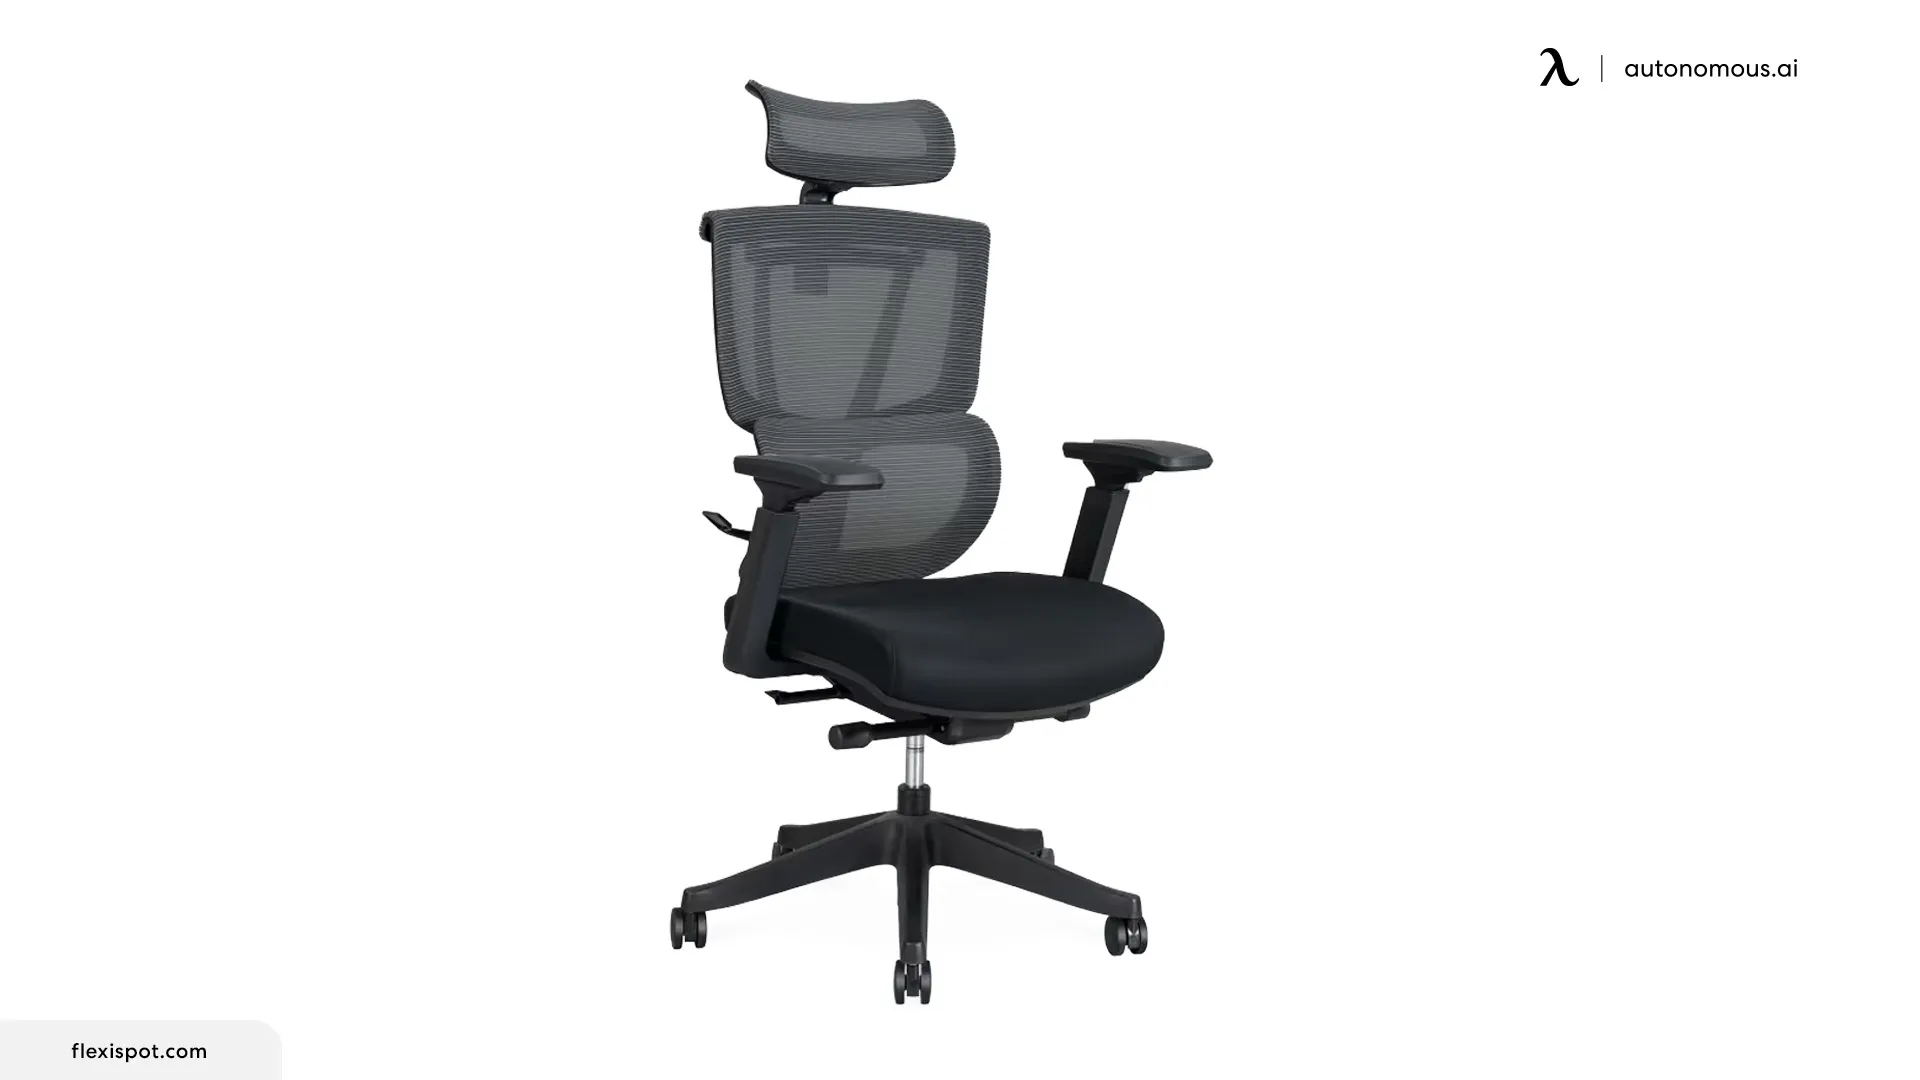 C7 Premium Ergonomic Office Chair